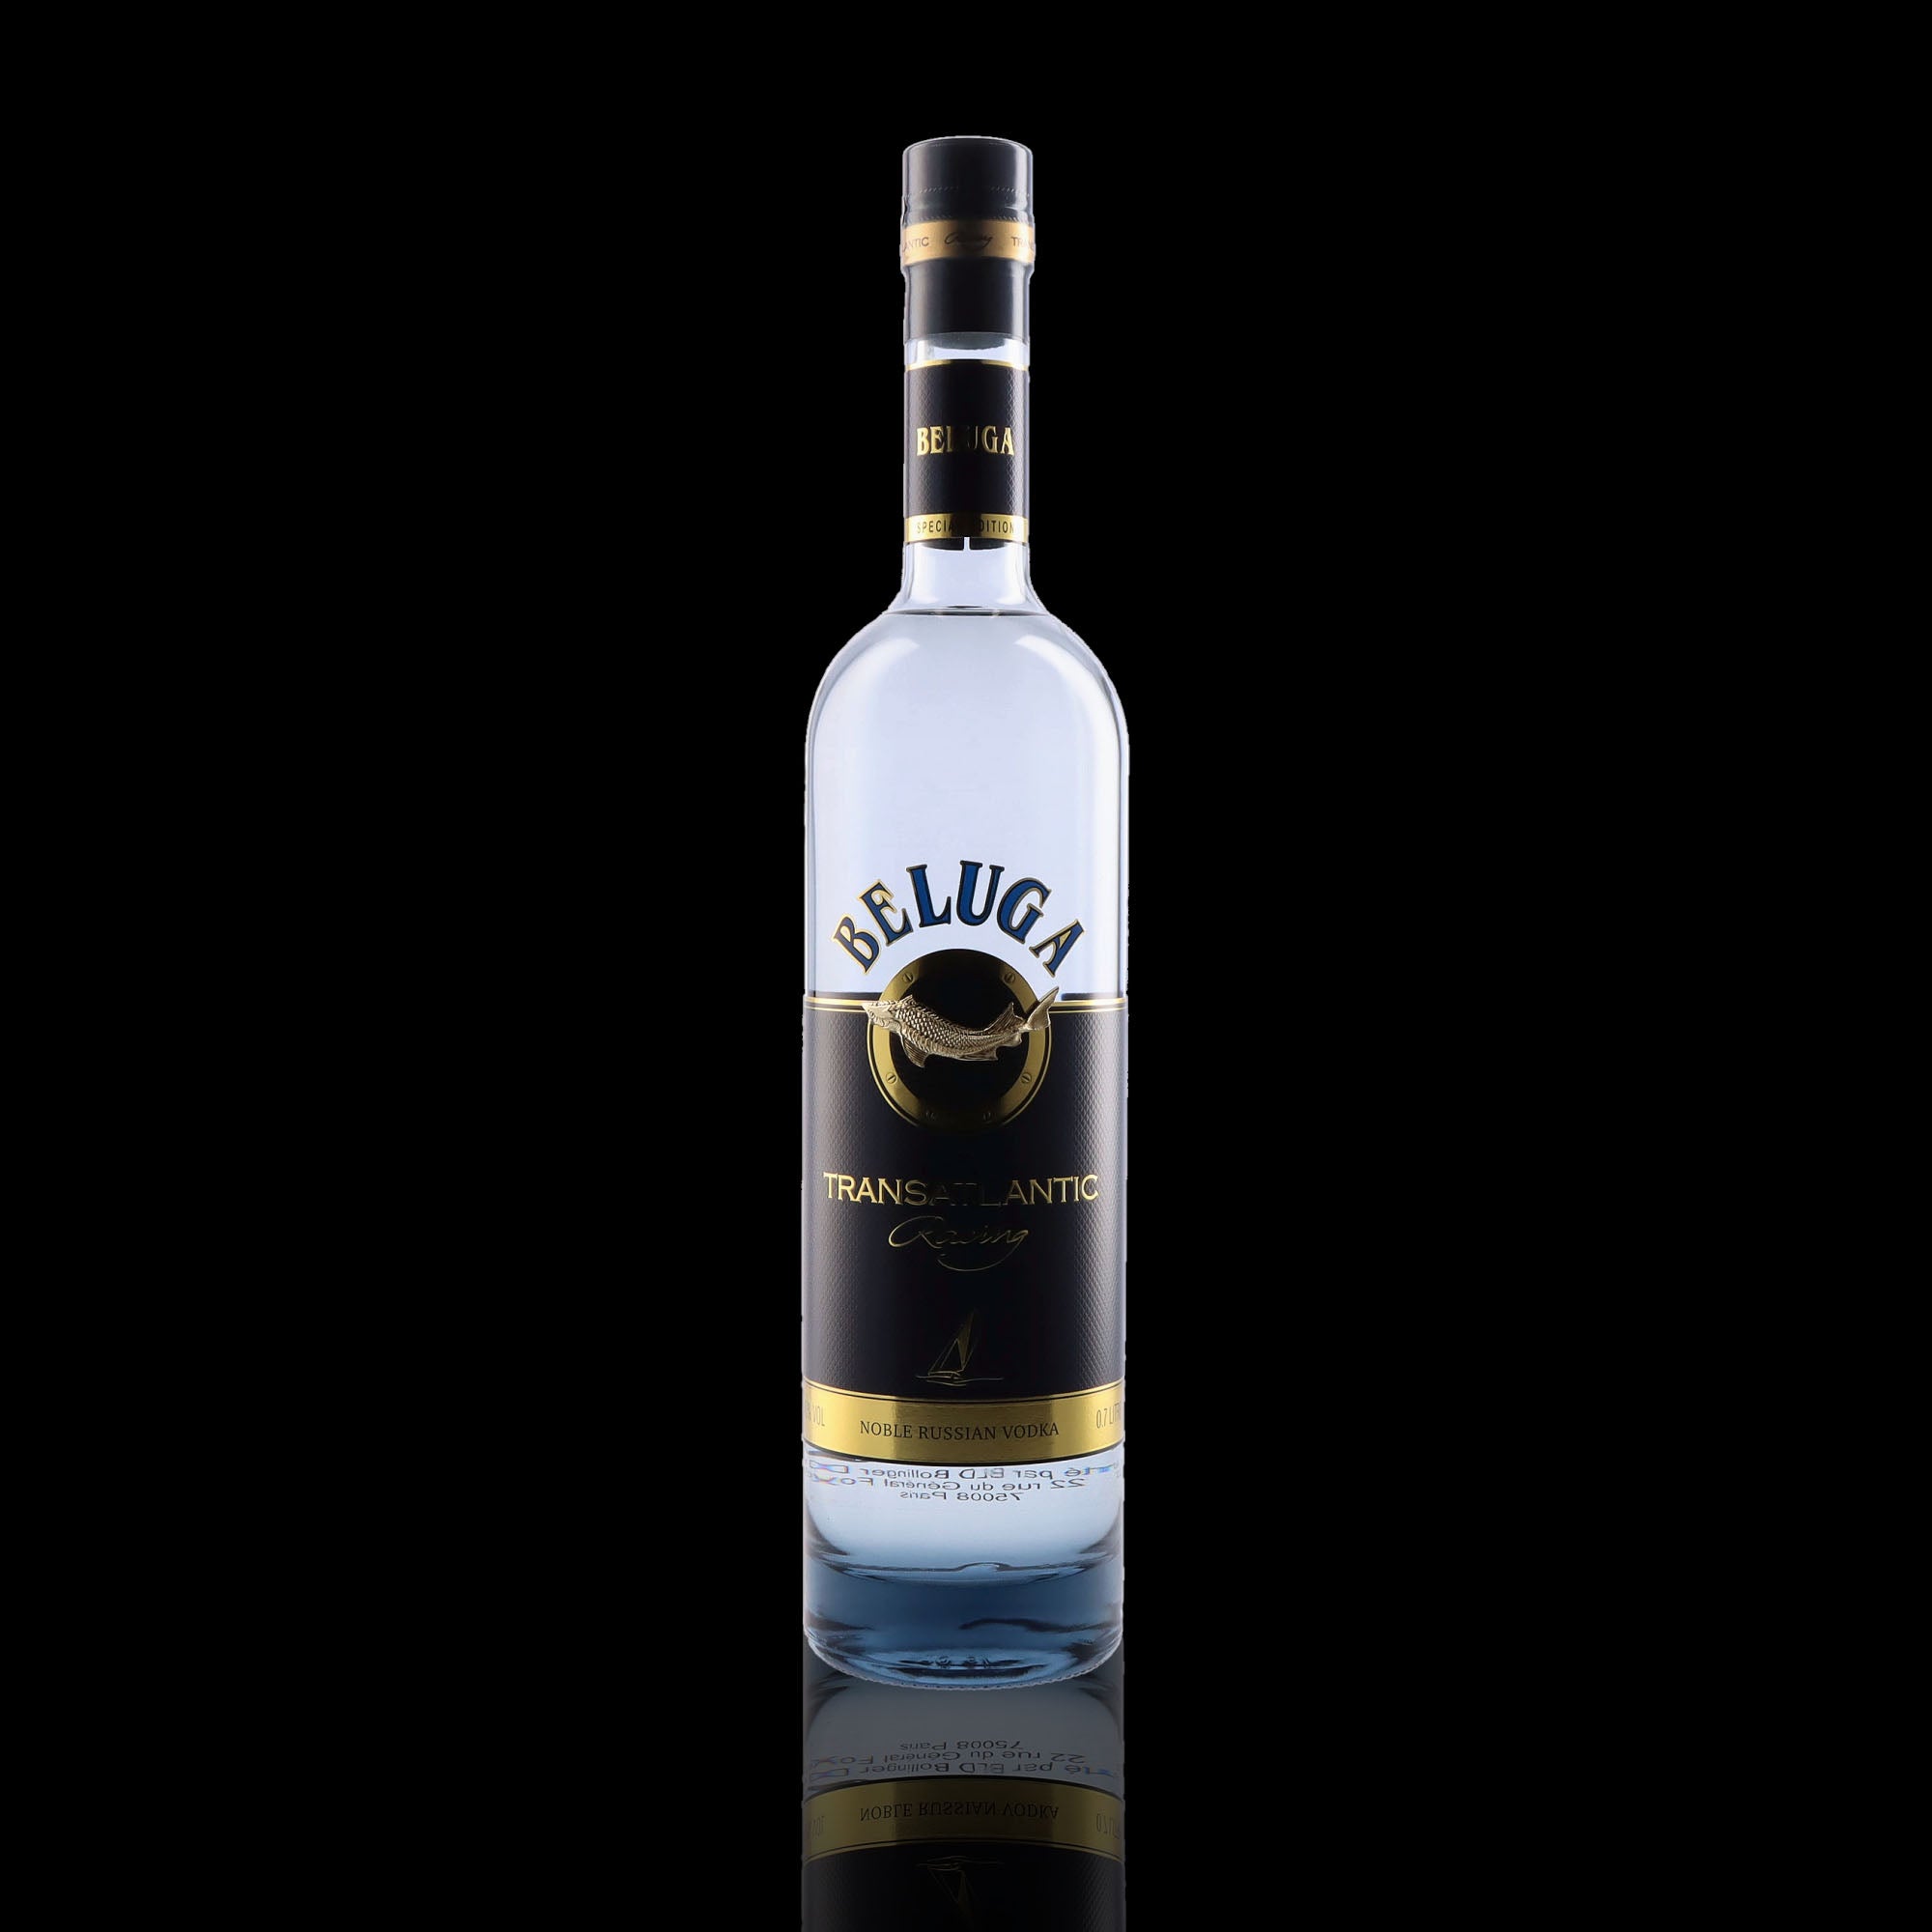 Une bouteille de Vodka, de la marque Beluga, nommée Transatlantic Racing.